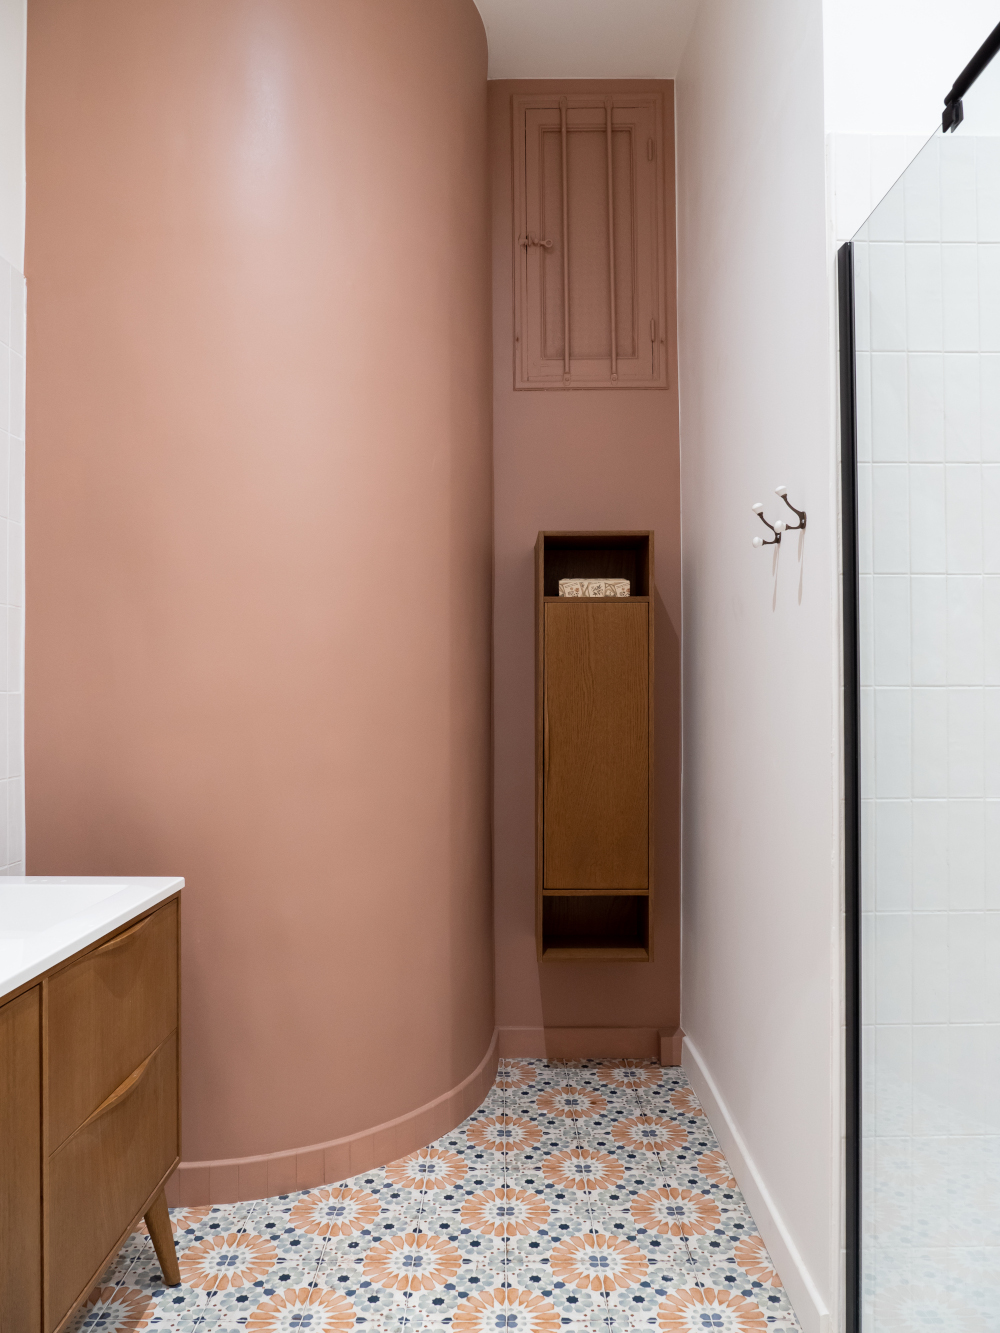 salle de bain décoration contemporaine terracotta